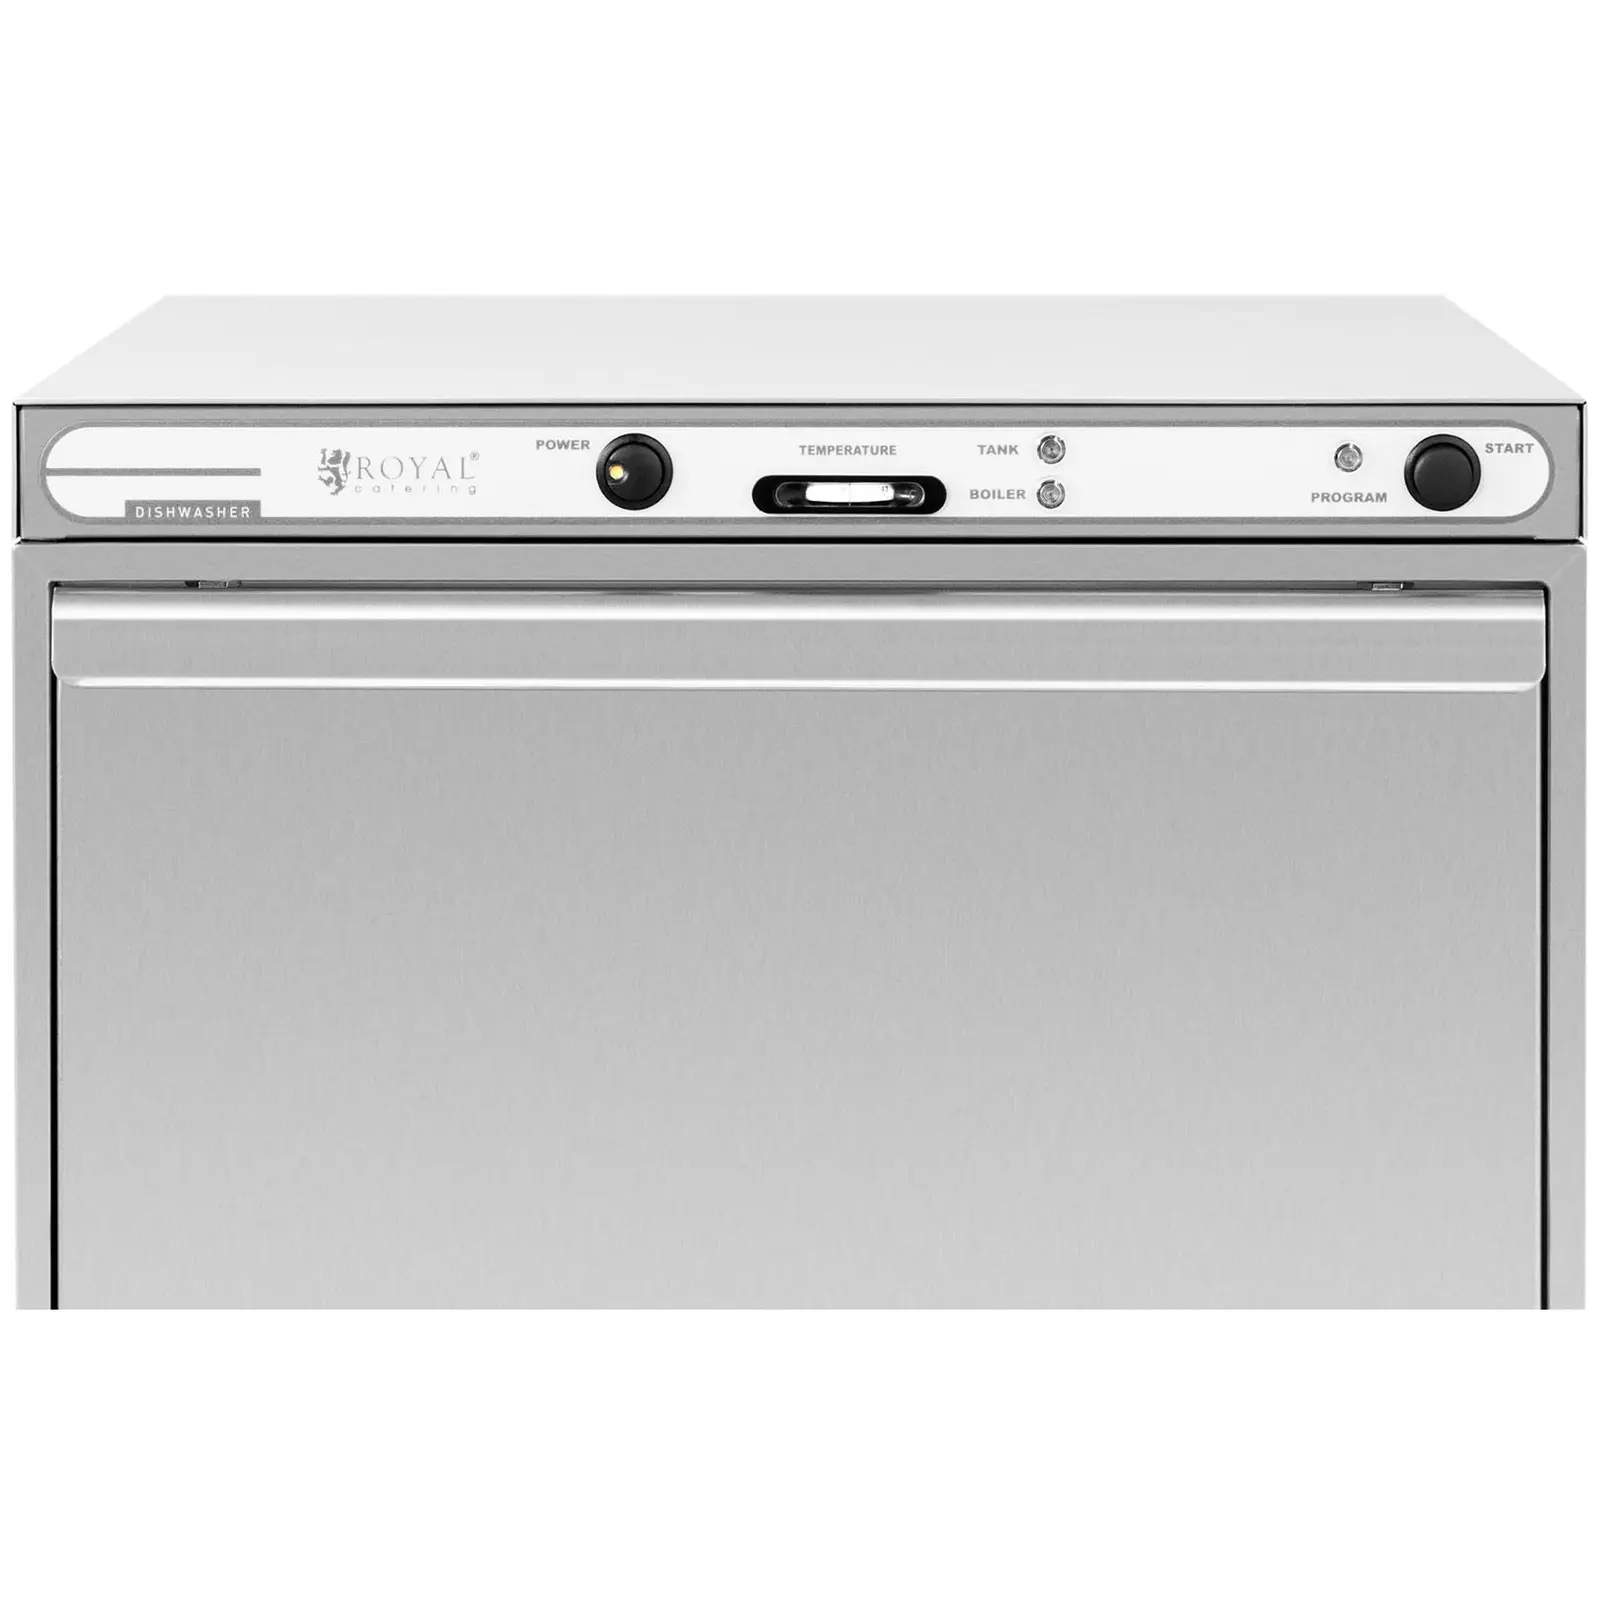 Umývačka riadu - 6600 W - nehrdzavejúca oceľ